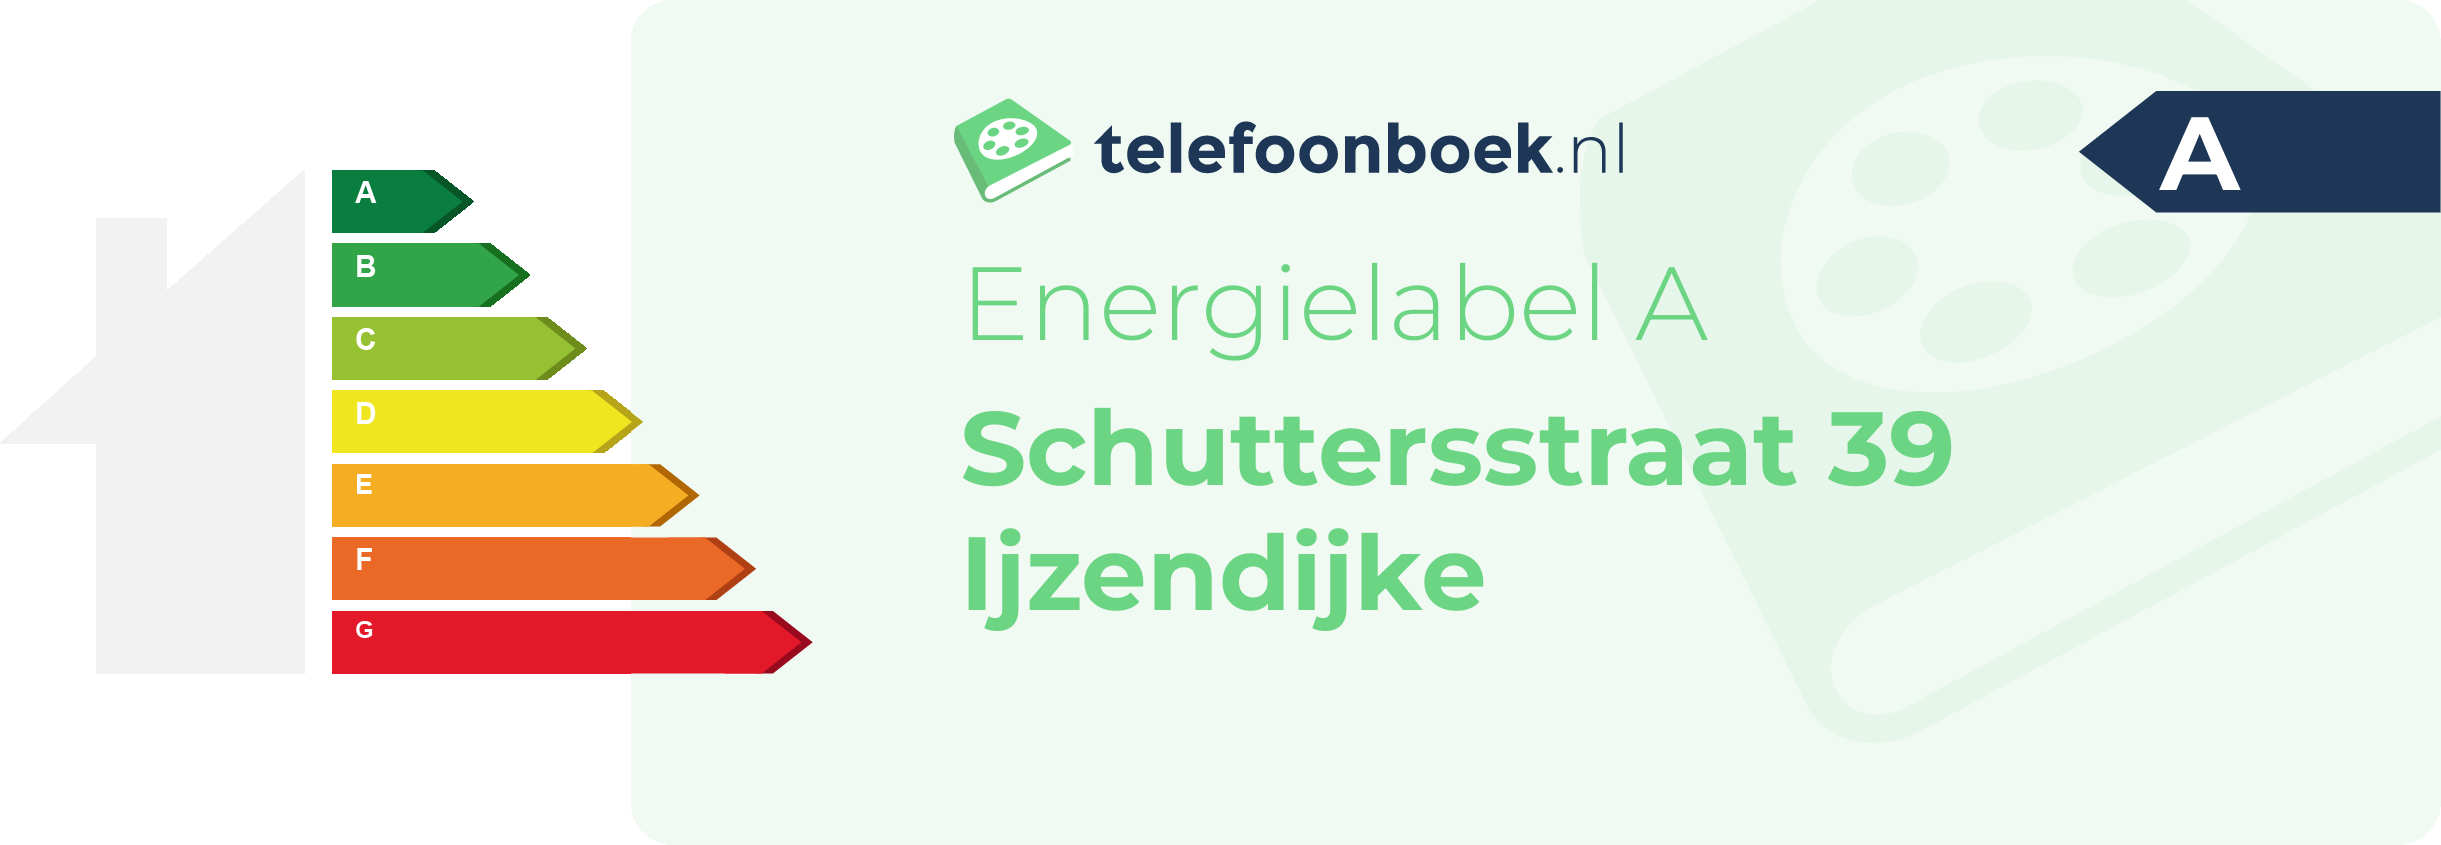 Energielabel Schuttersstraat 39 Ijzendijke